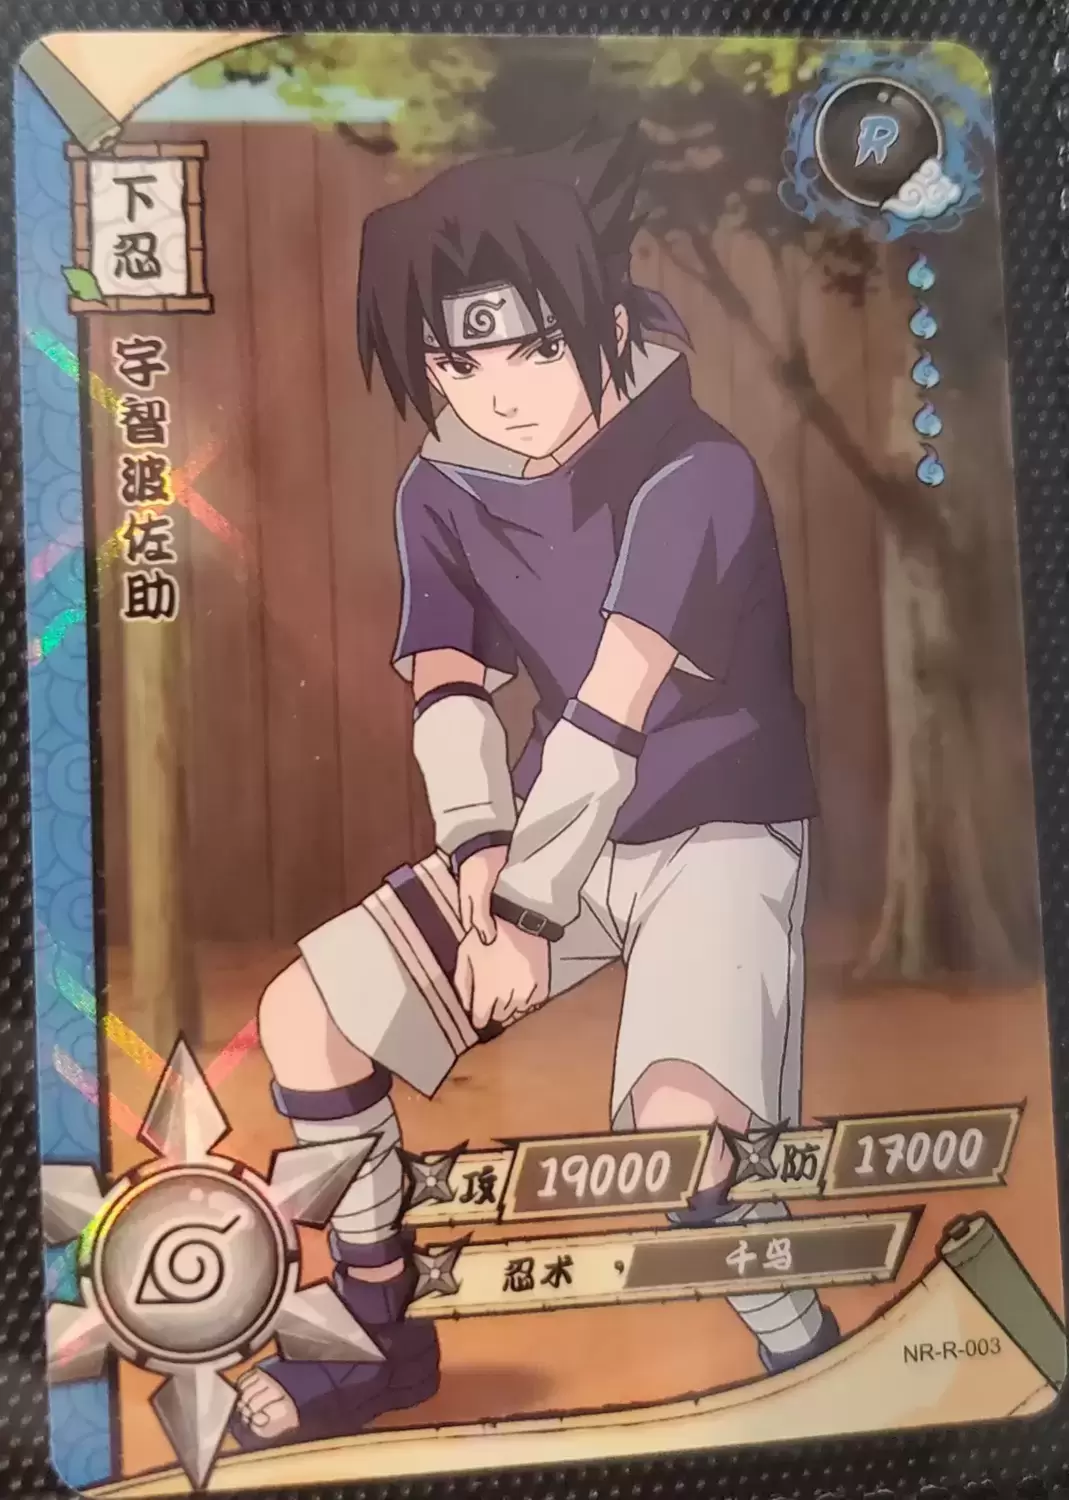 Naruto TCG - R-003 (Holo) - Sasuke Uchiha